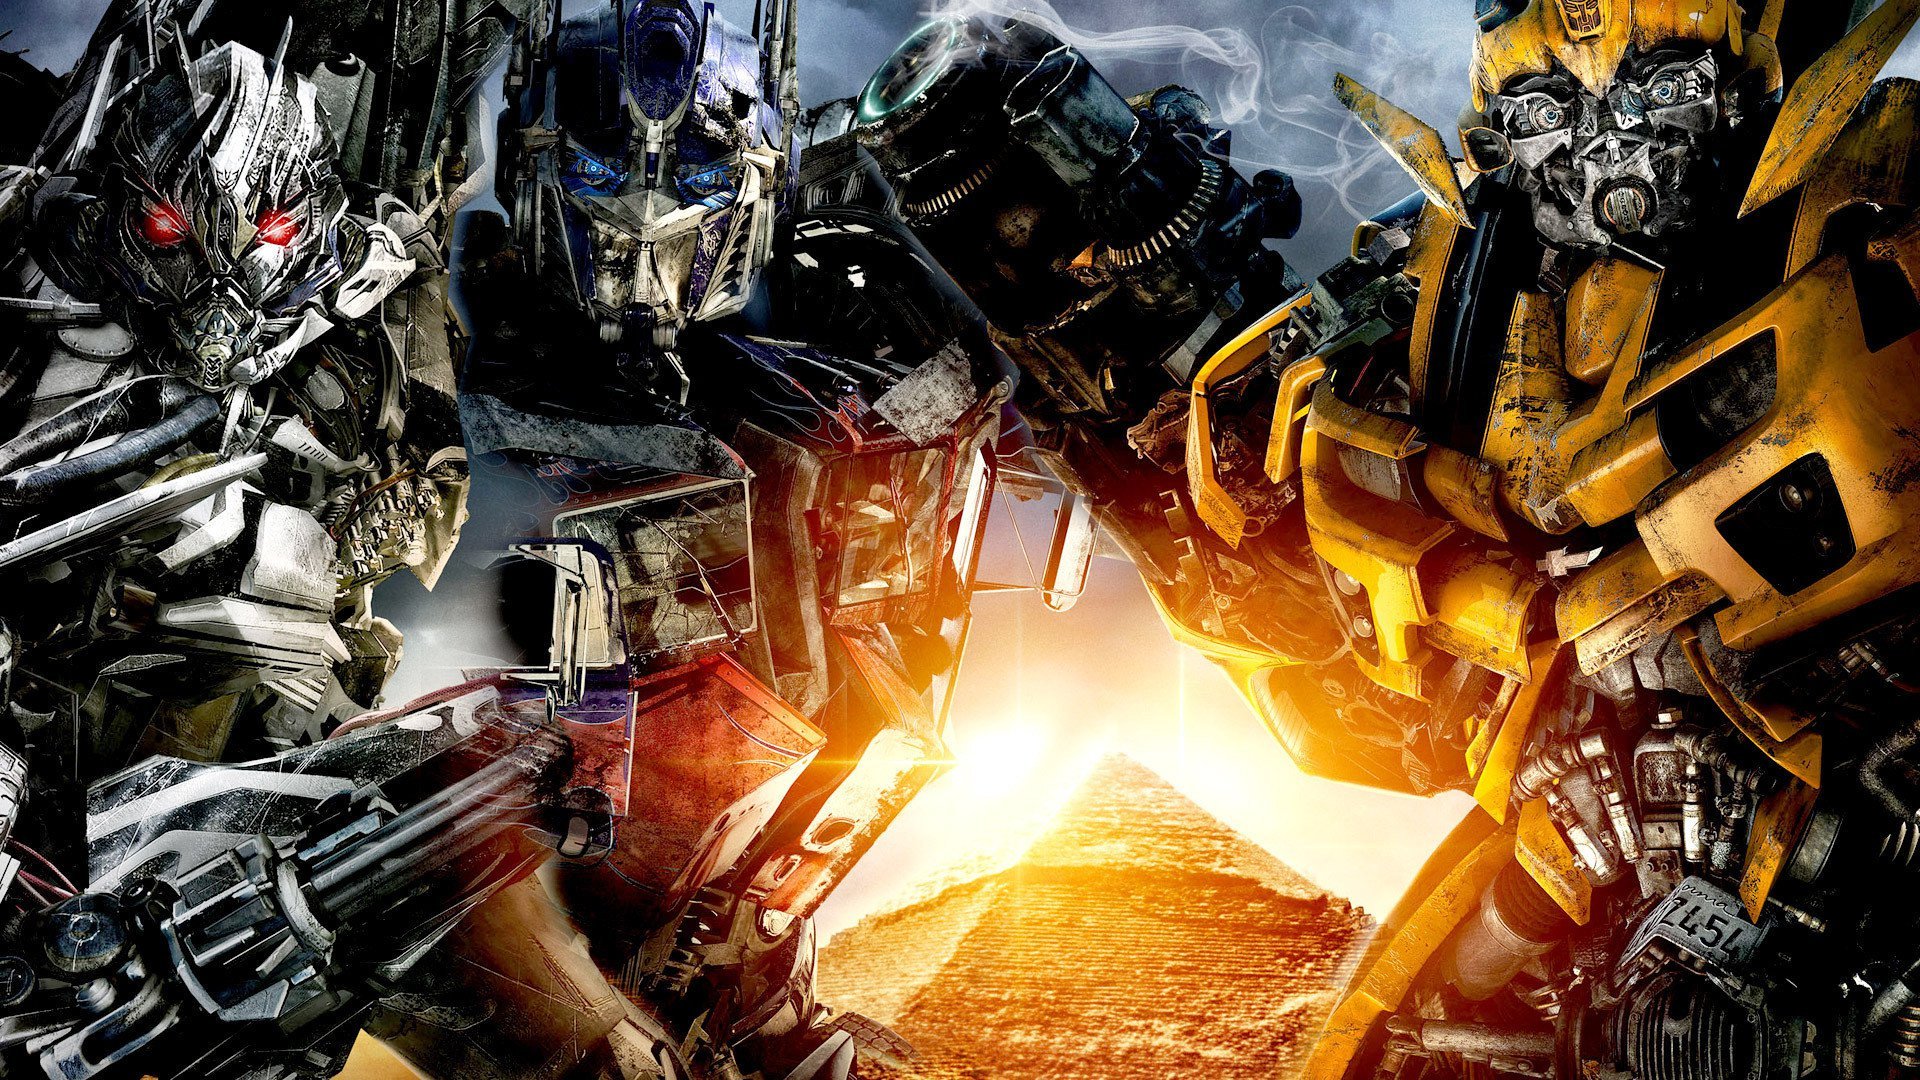 ტრანსფორმერები: დამარცხებულთა შურისძიება / Transformers: Revenge of the Fallen ქართულად